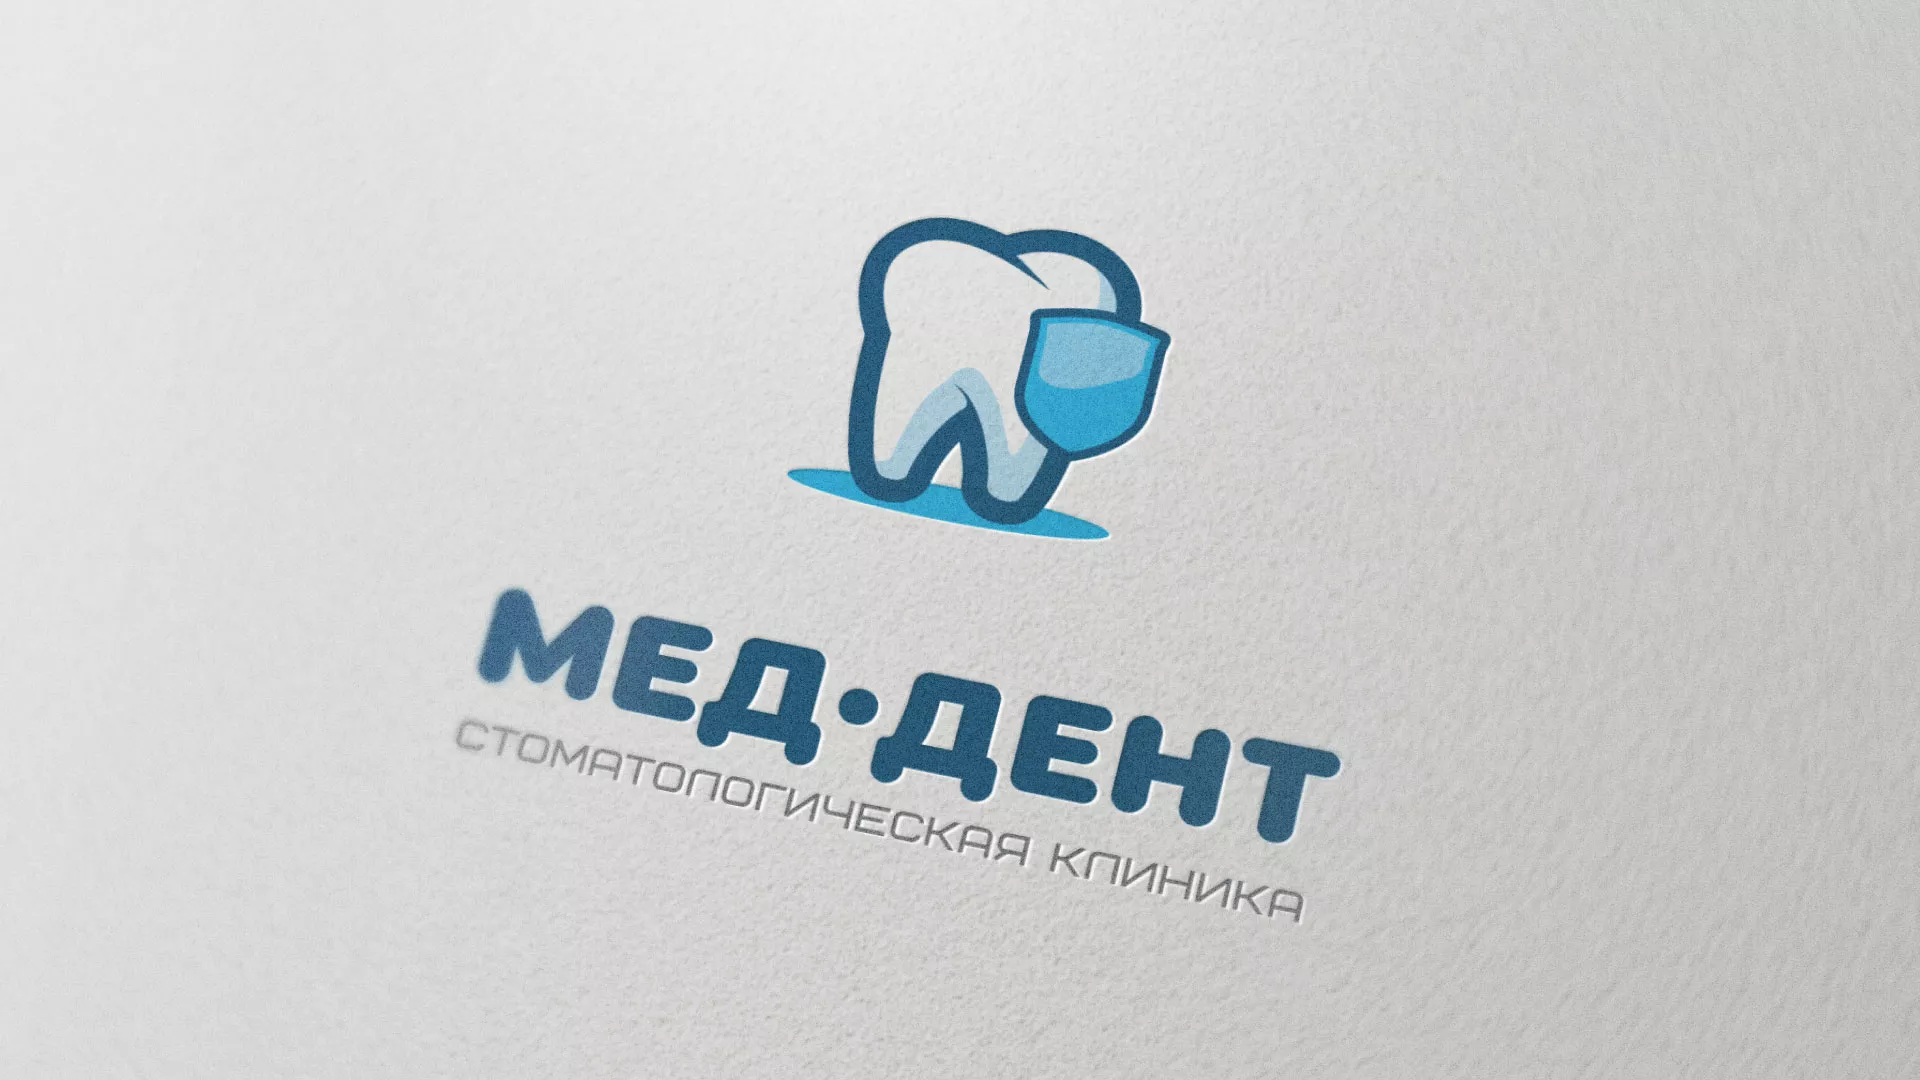 Разработка логотипа стоматологической клиники «МЕД-ДЕНТ» в Болотном